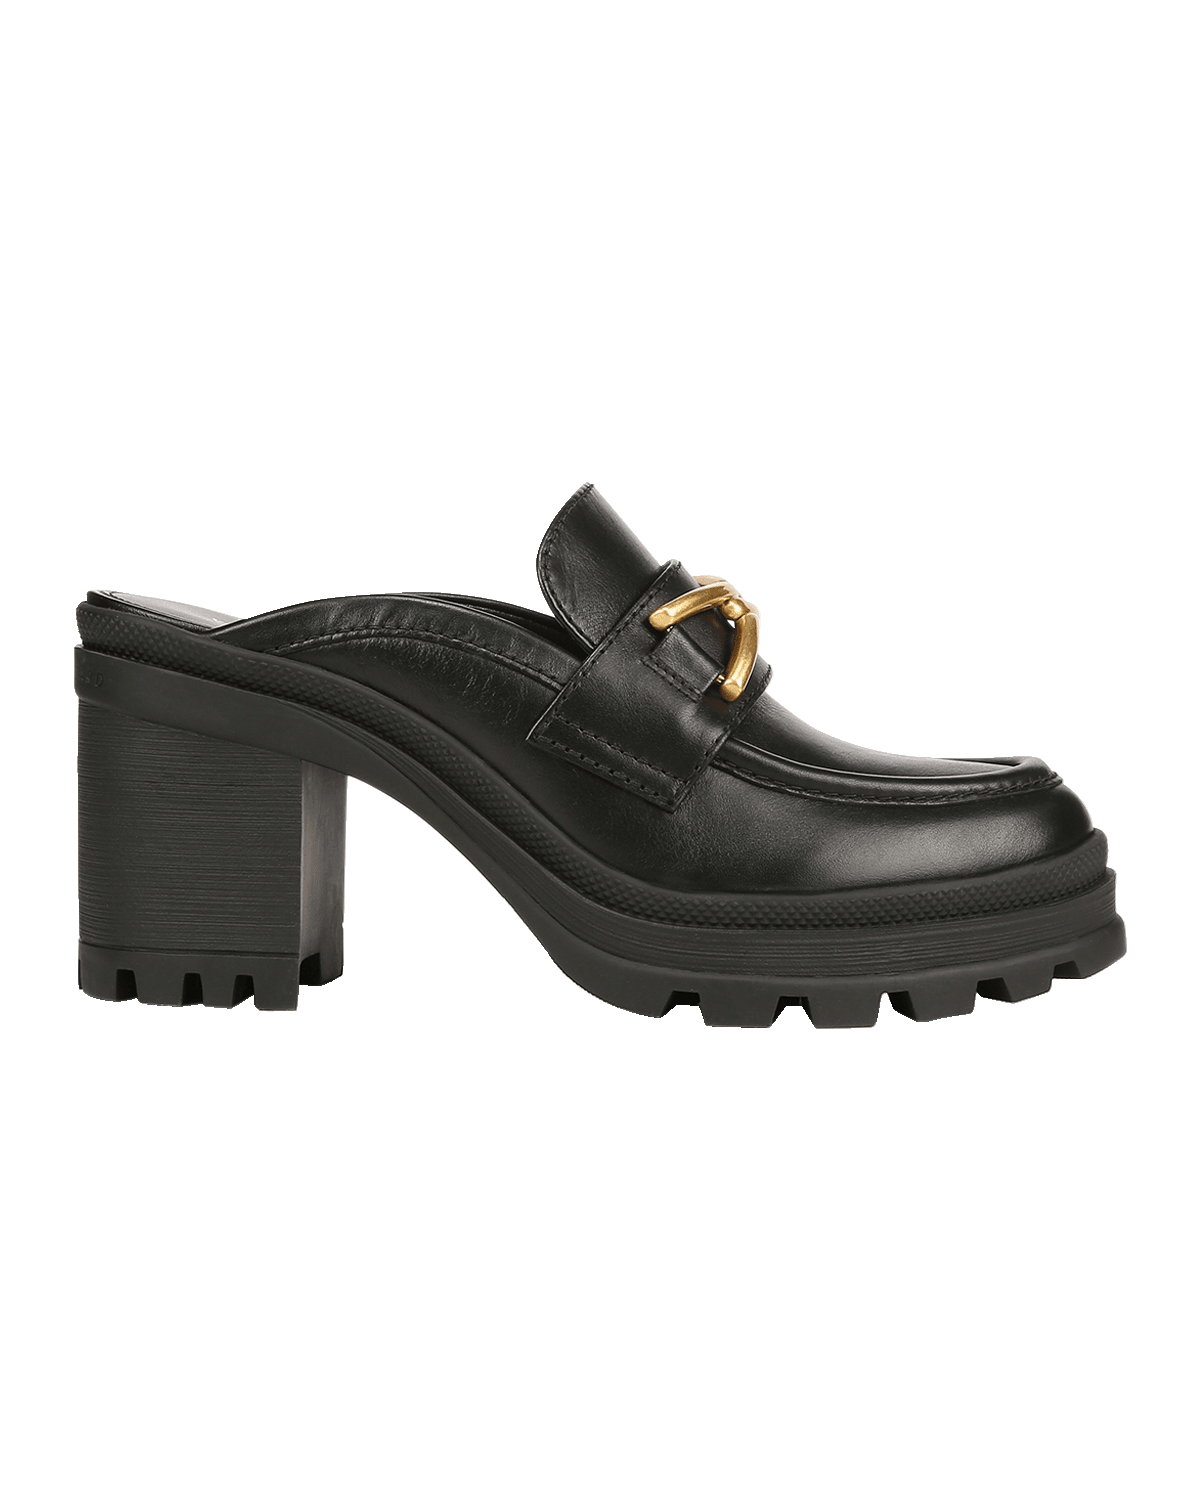 Veronica Beard Lisa Leather Stiletto Boots | Neiman Marcus